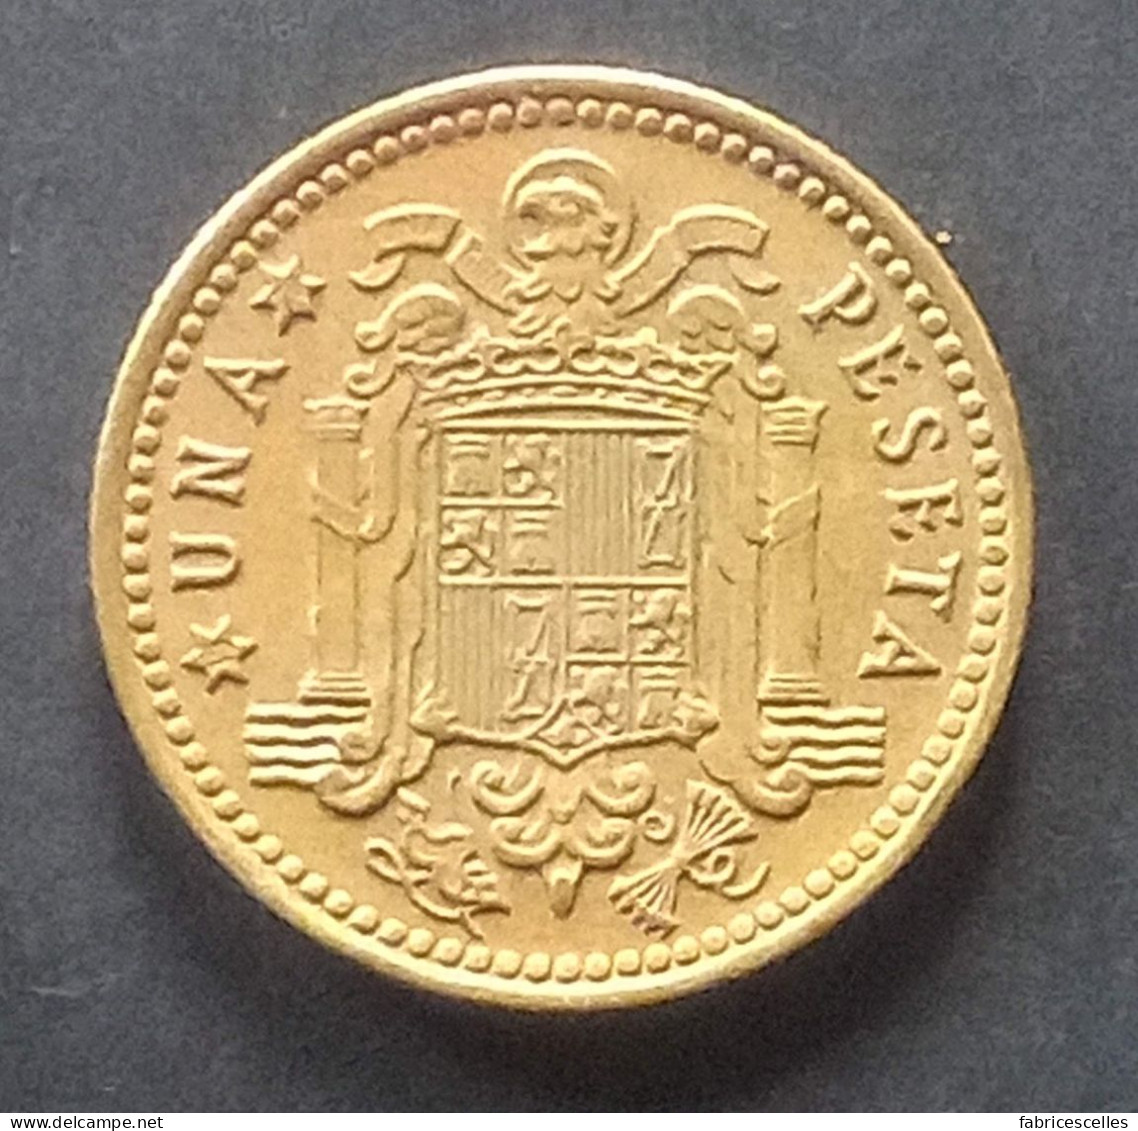 Espagne - Pièce De 1 Peseta 1975 (Juan Carlos I) - 1 Peseta